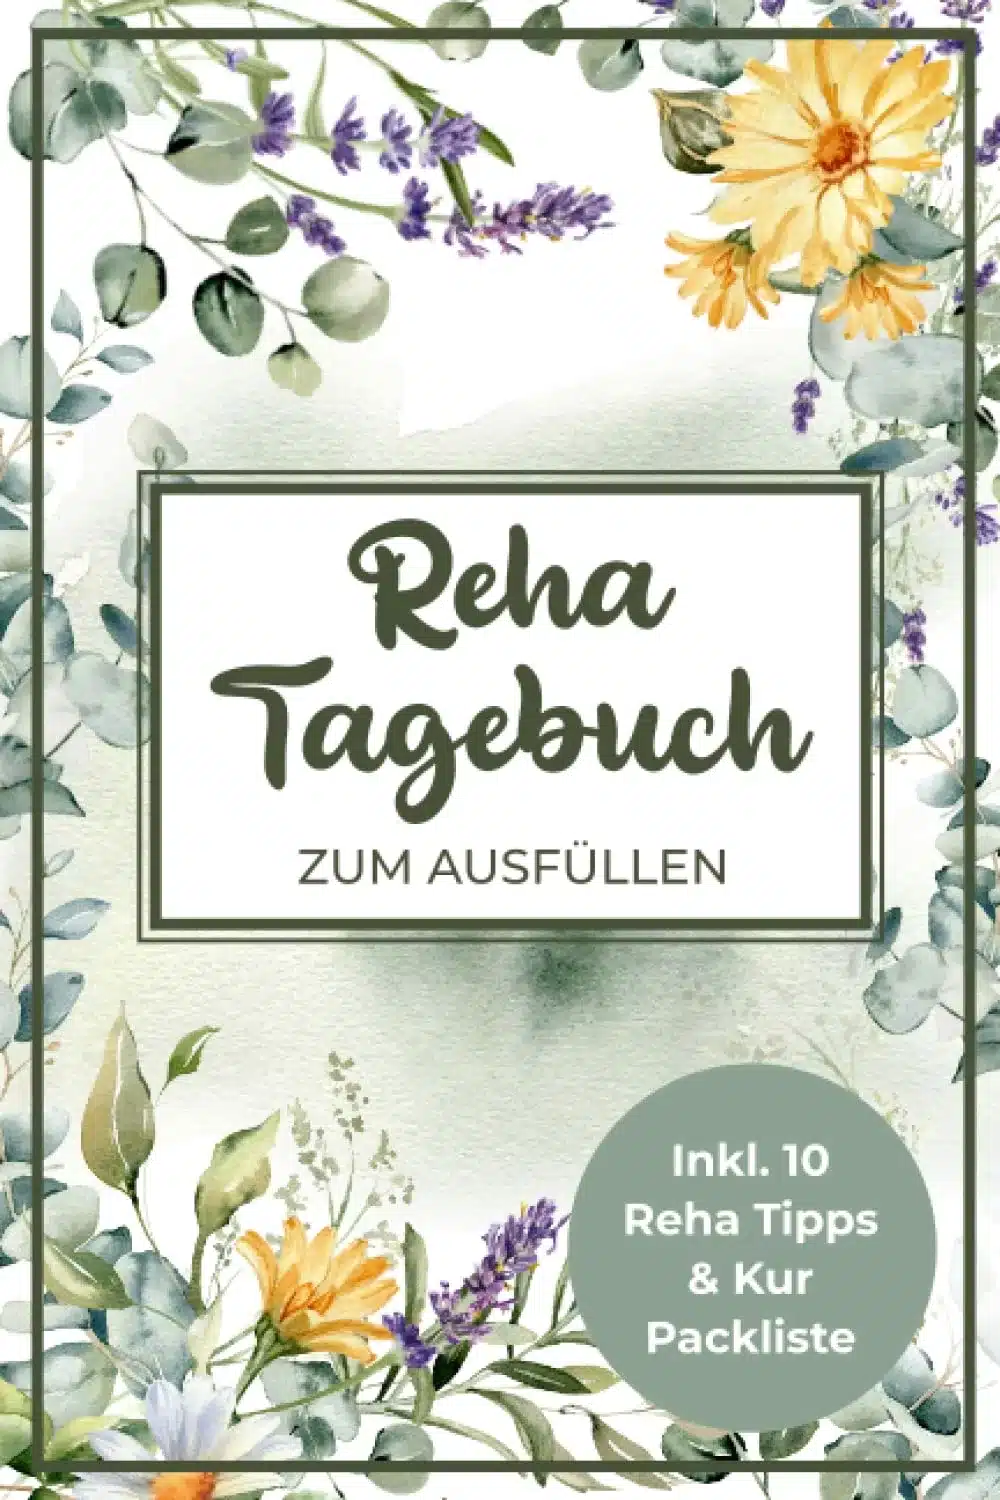 Reha Tagebuch zum Ausfüllen: Reha und Kur Tagebuch A5 I 9 Wochen Termin & Notizseiten während und nach der Reha, Packliste, Reha Ziele, 10 Tipps für...